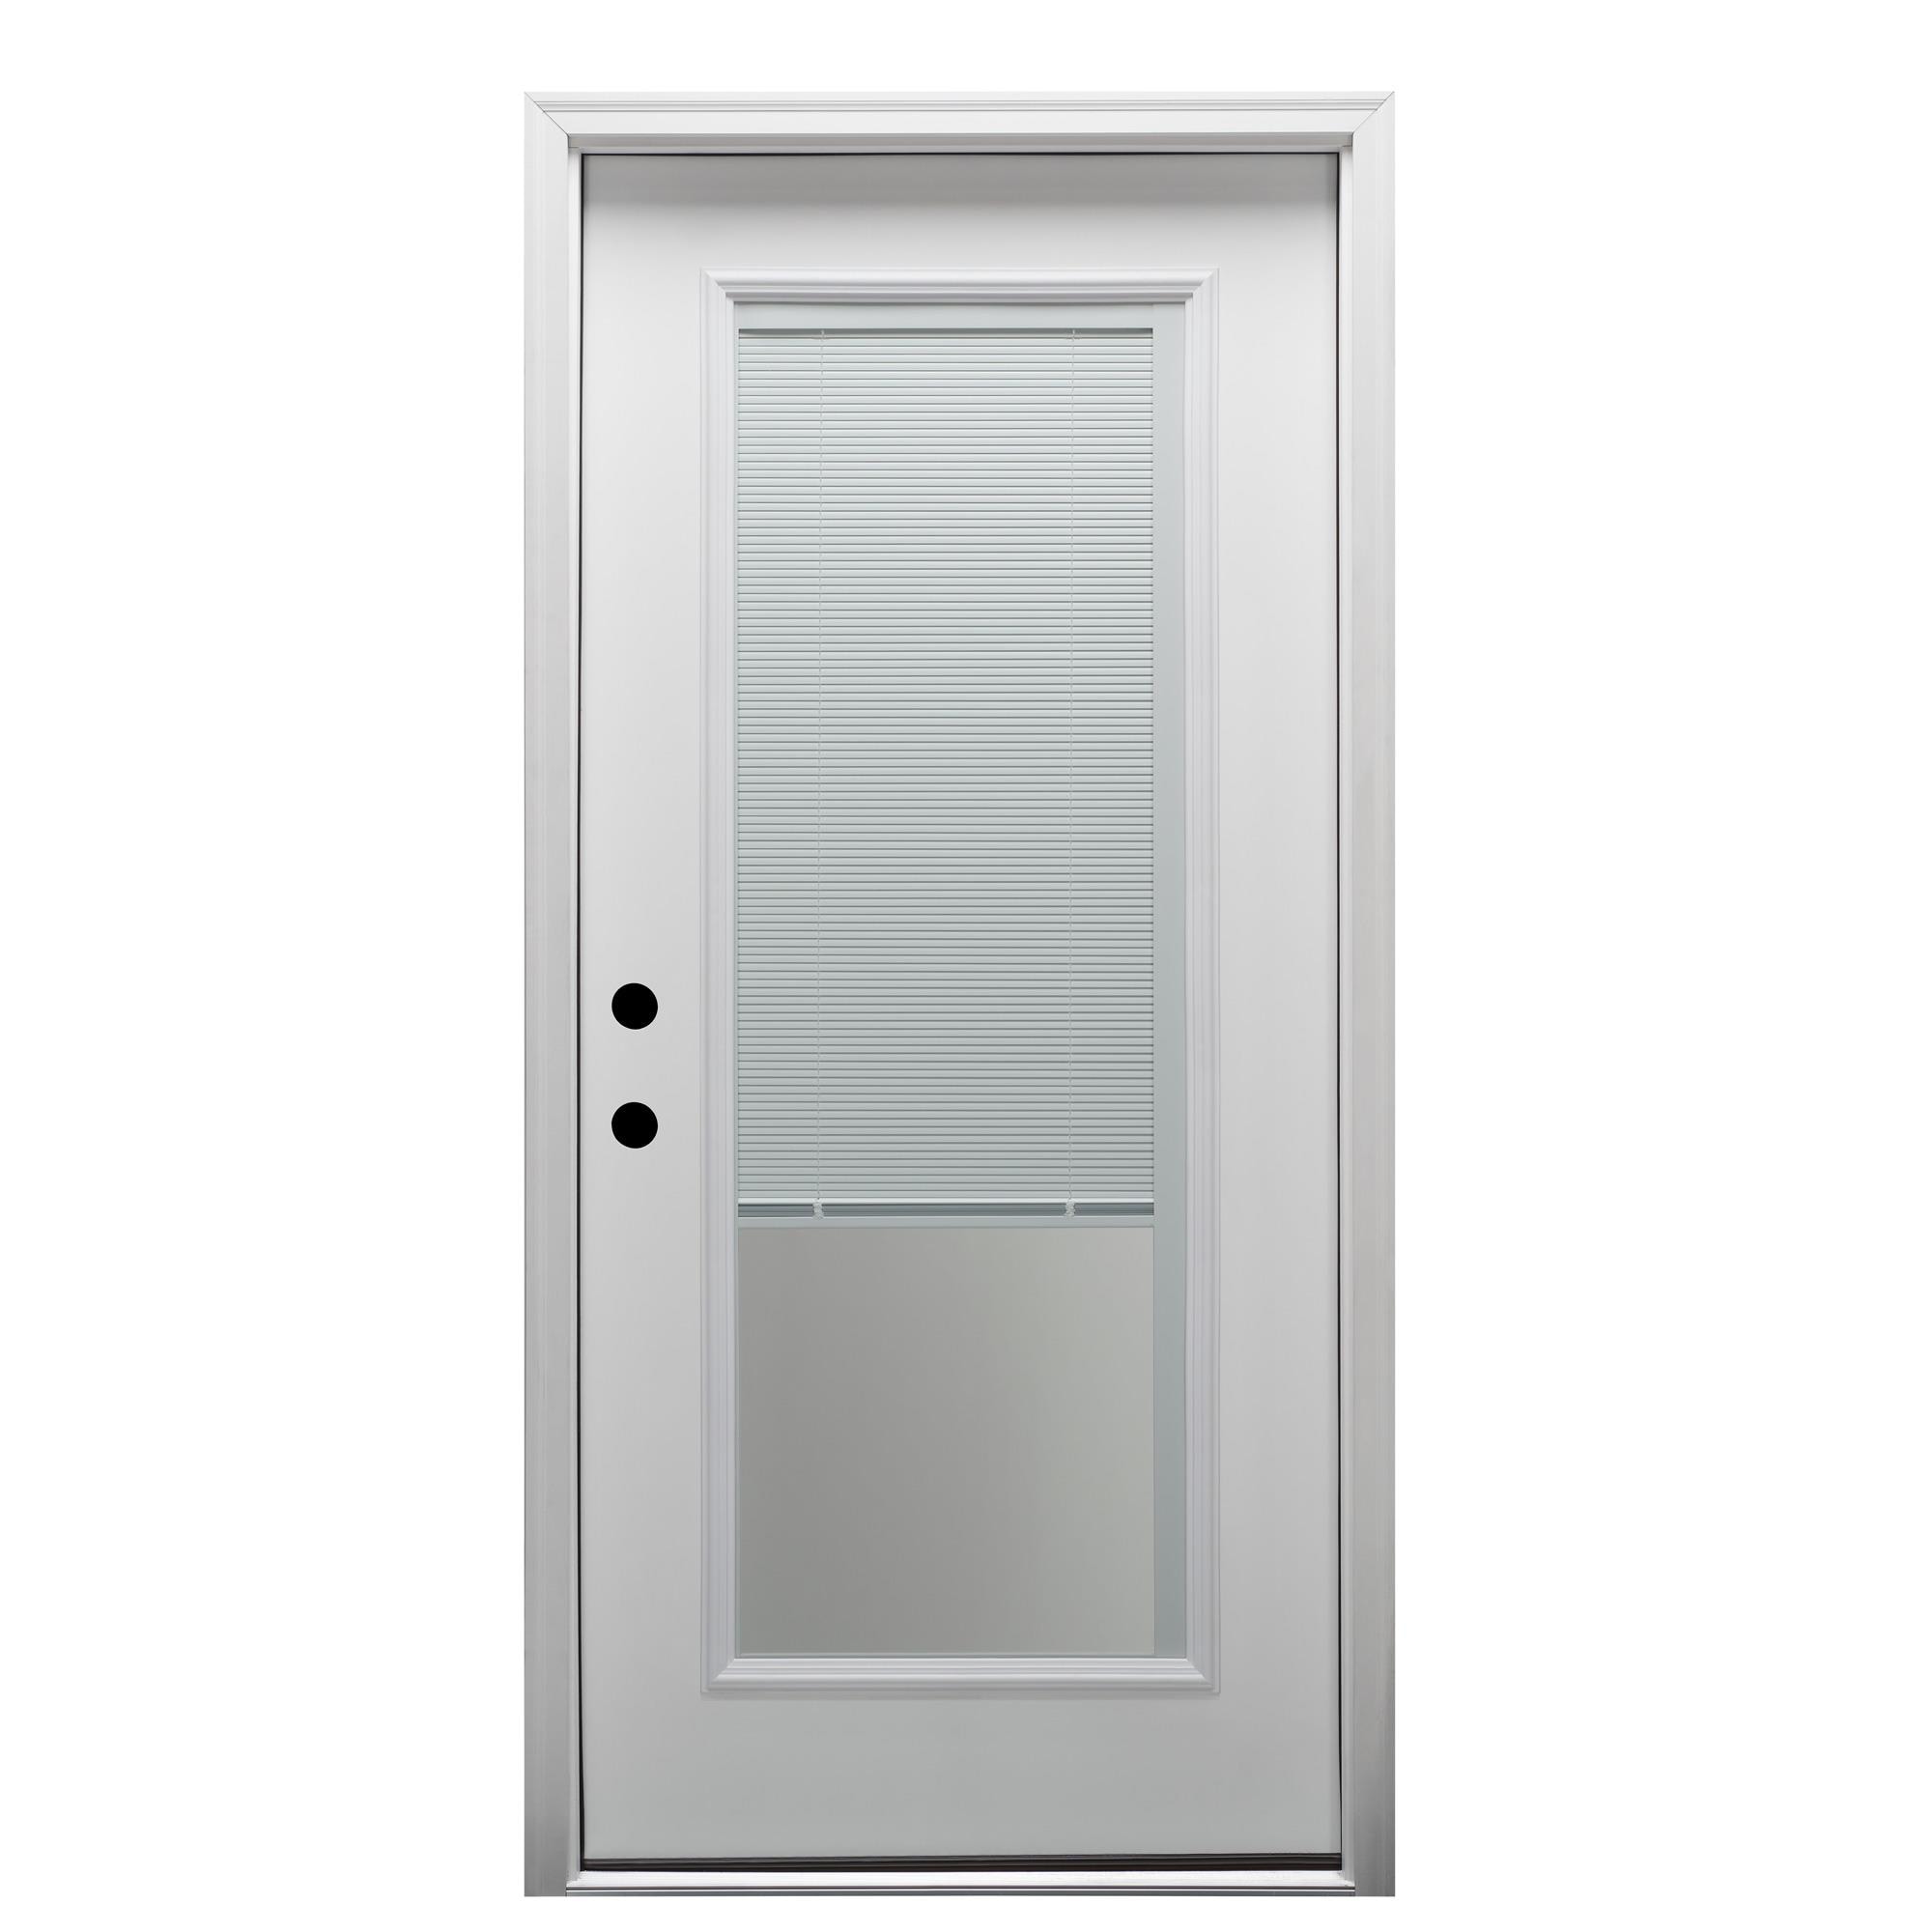 Primed Fiberglass Prehung Front Entry Door Verona Home Design Door Orientation: Right Hand/Inswing, Door Size: 81.75 H x 30 W x 4.56 D